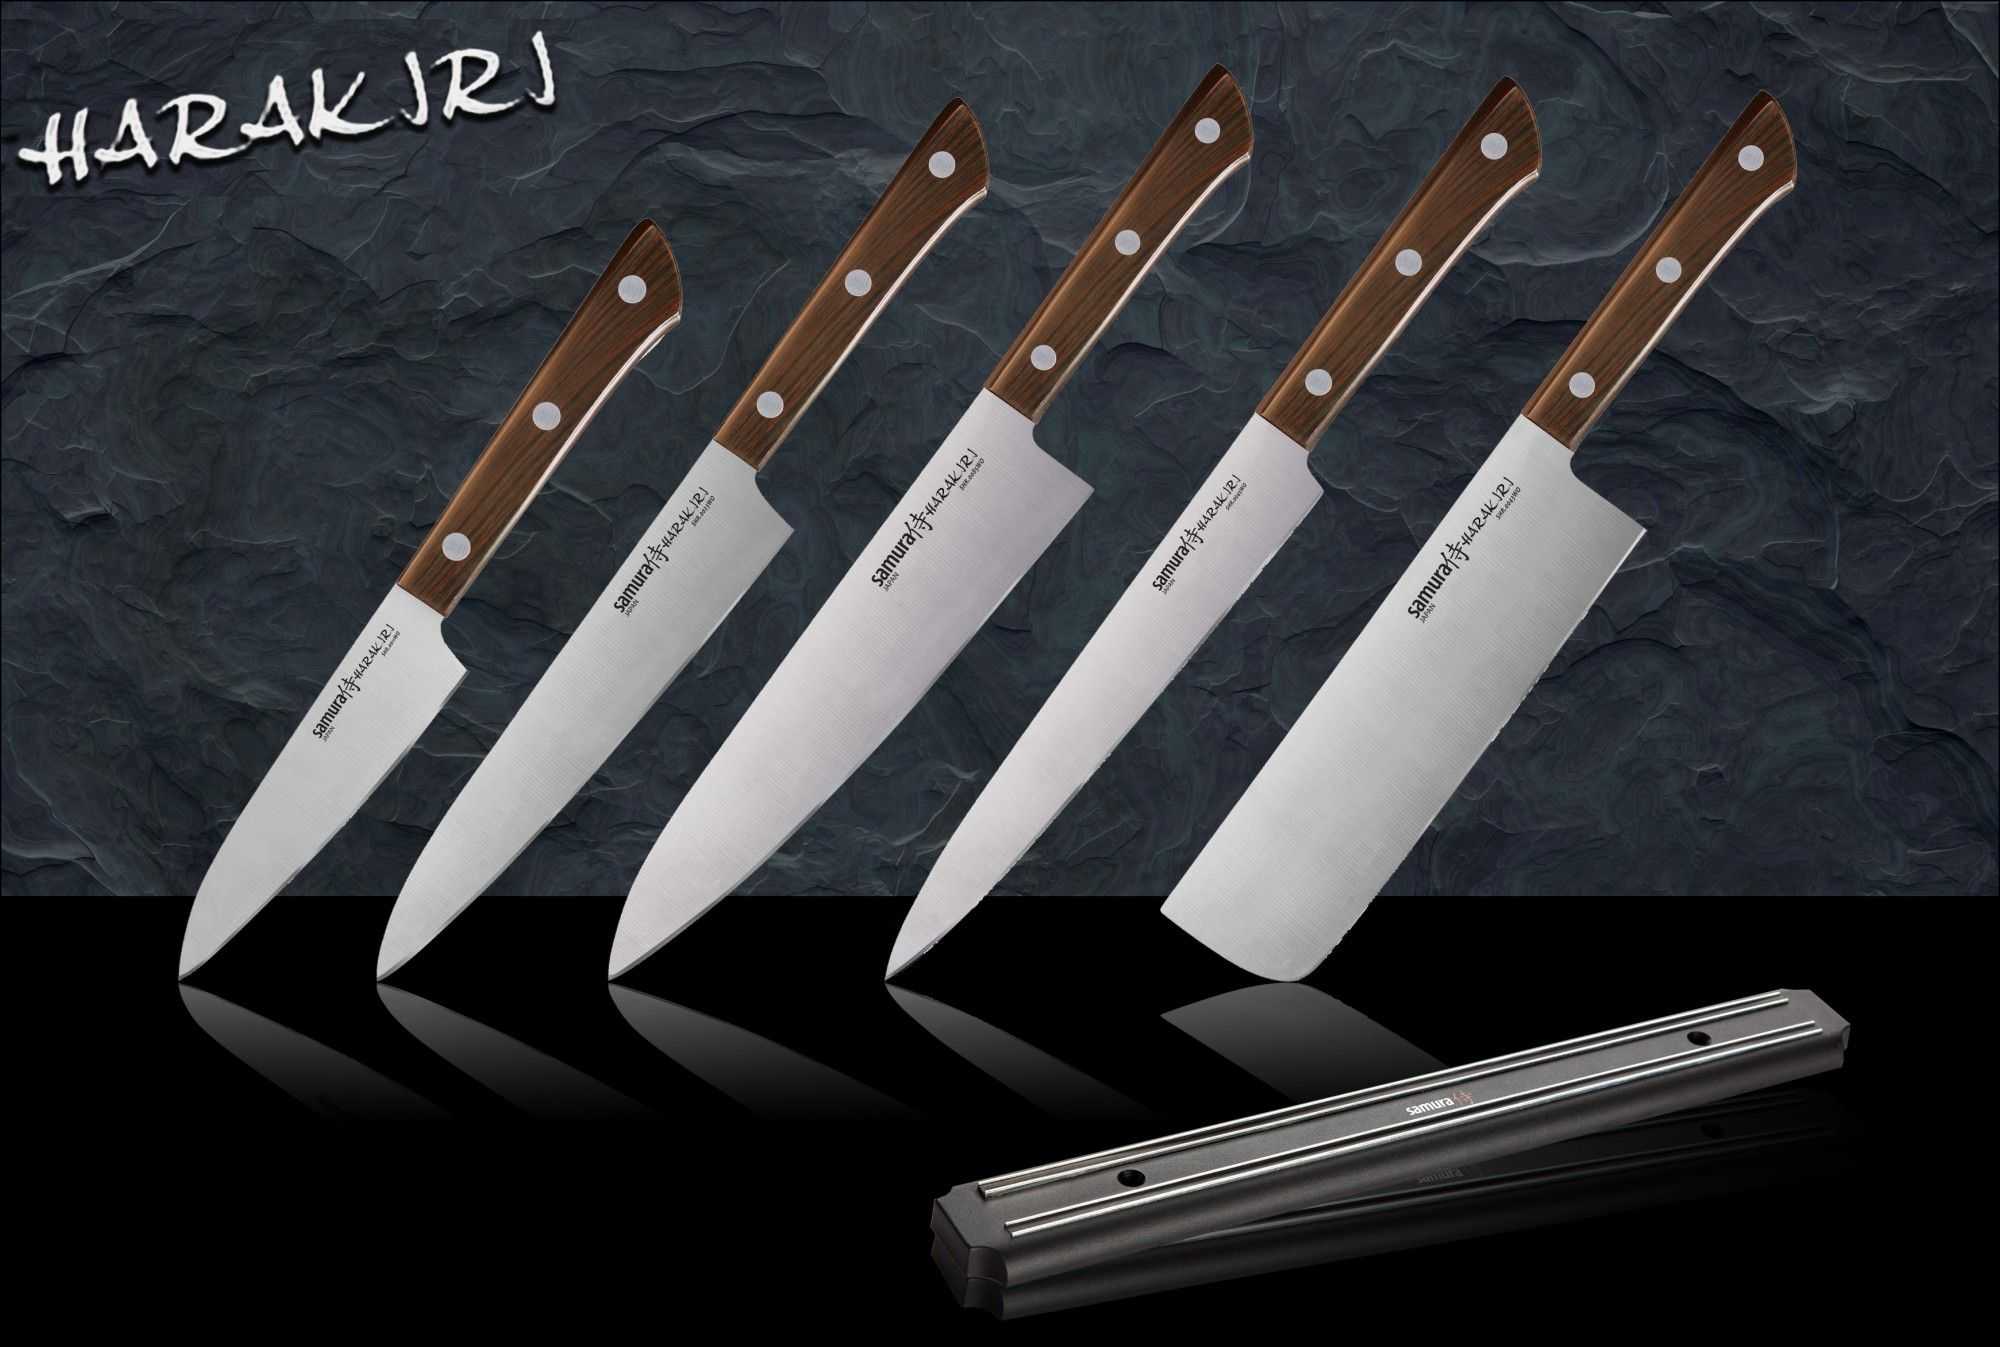 Японские ножи: лучшие кухонные - поварской традиционный, рабочий для мяса, столовые, для овощей, рыбы, разделочный